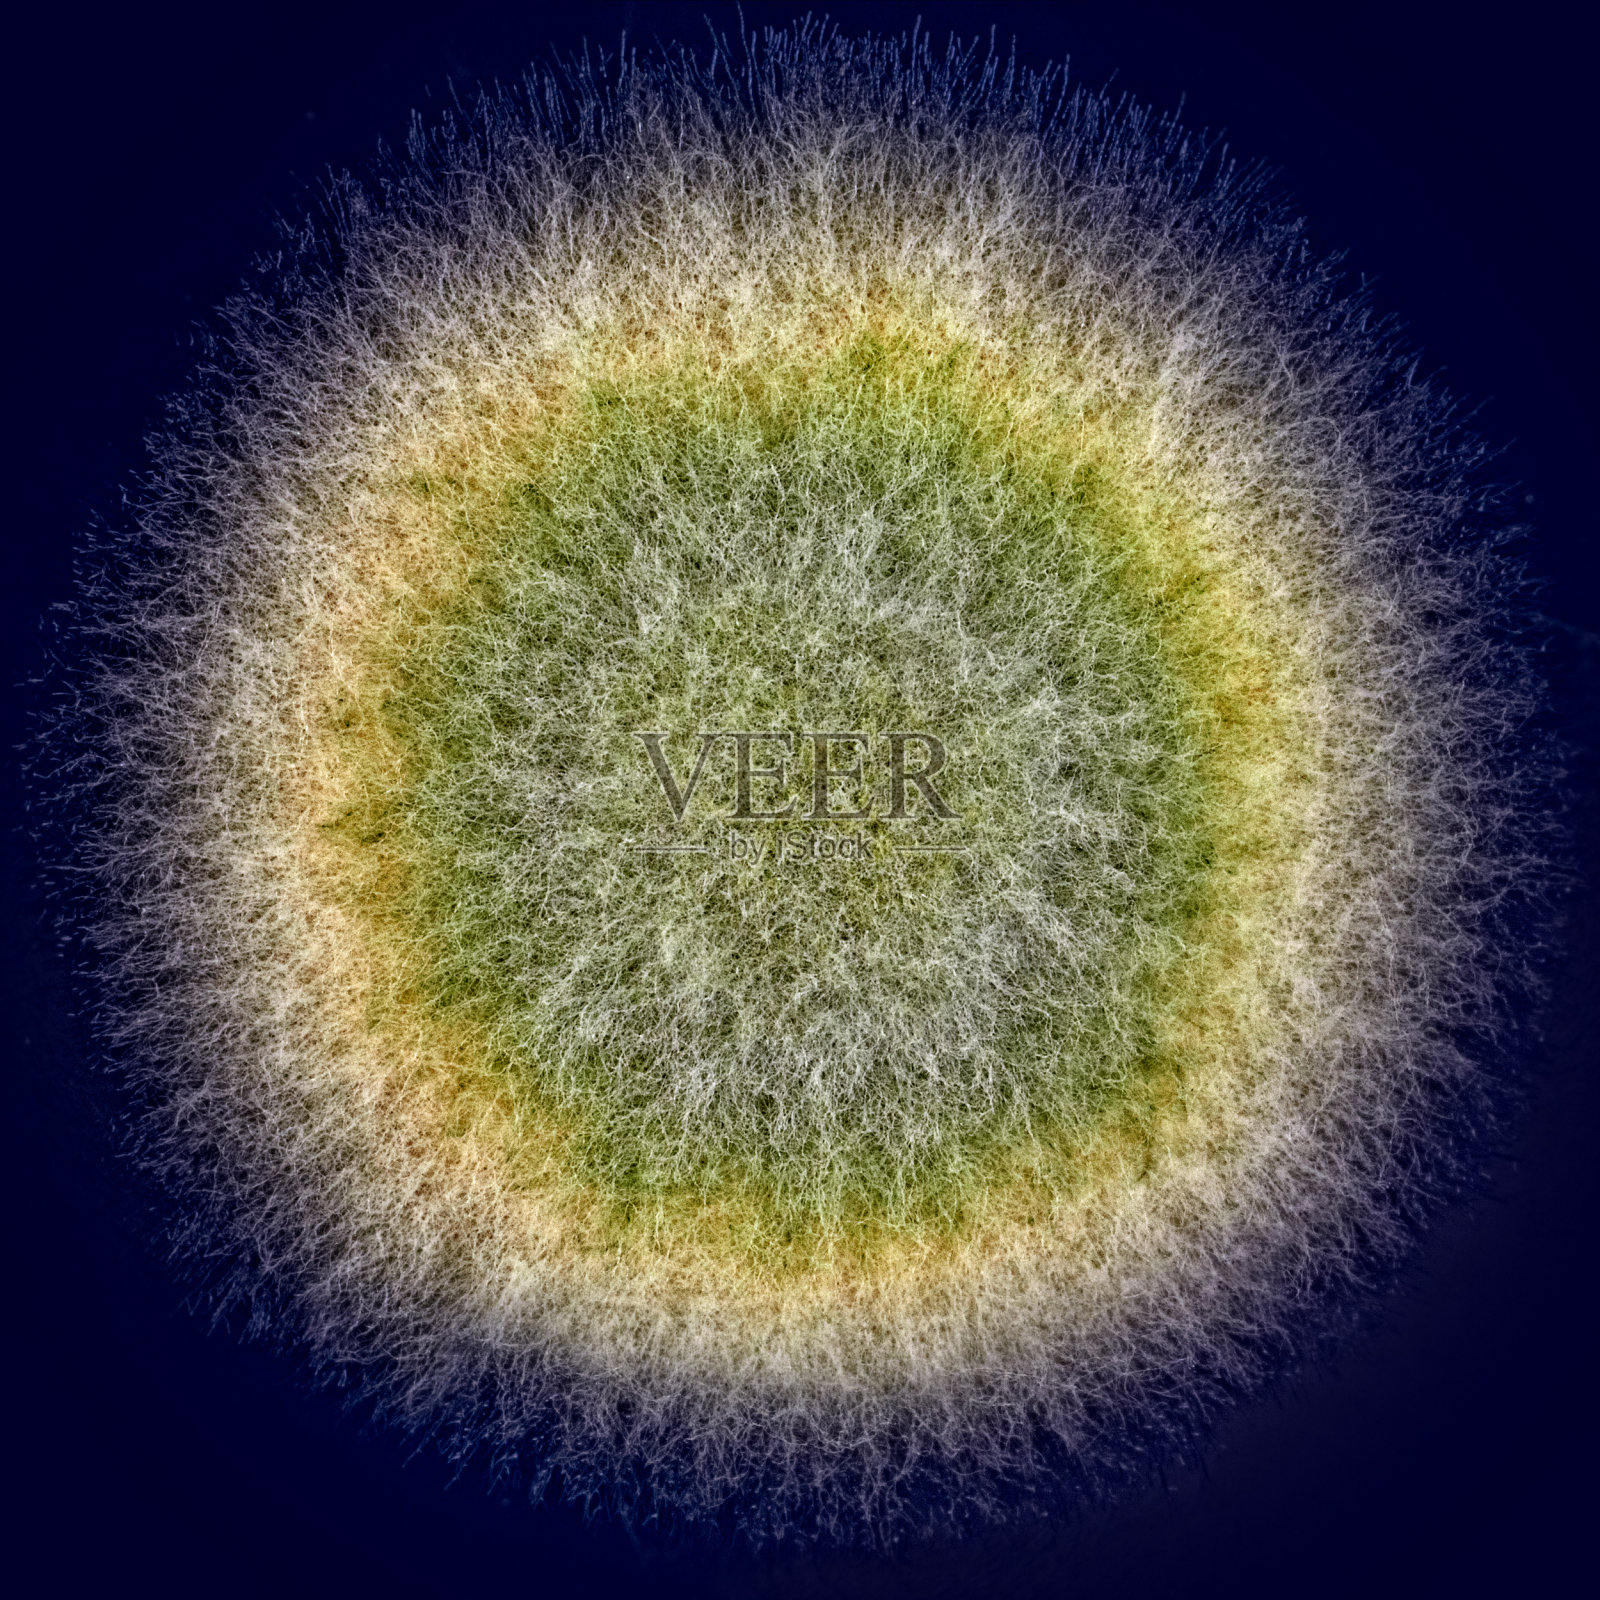 微距拍摄模糊的绿色霉菌照片摄影图片